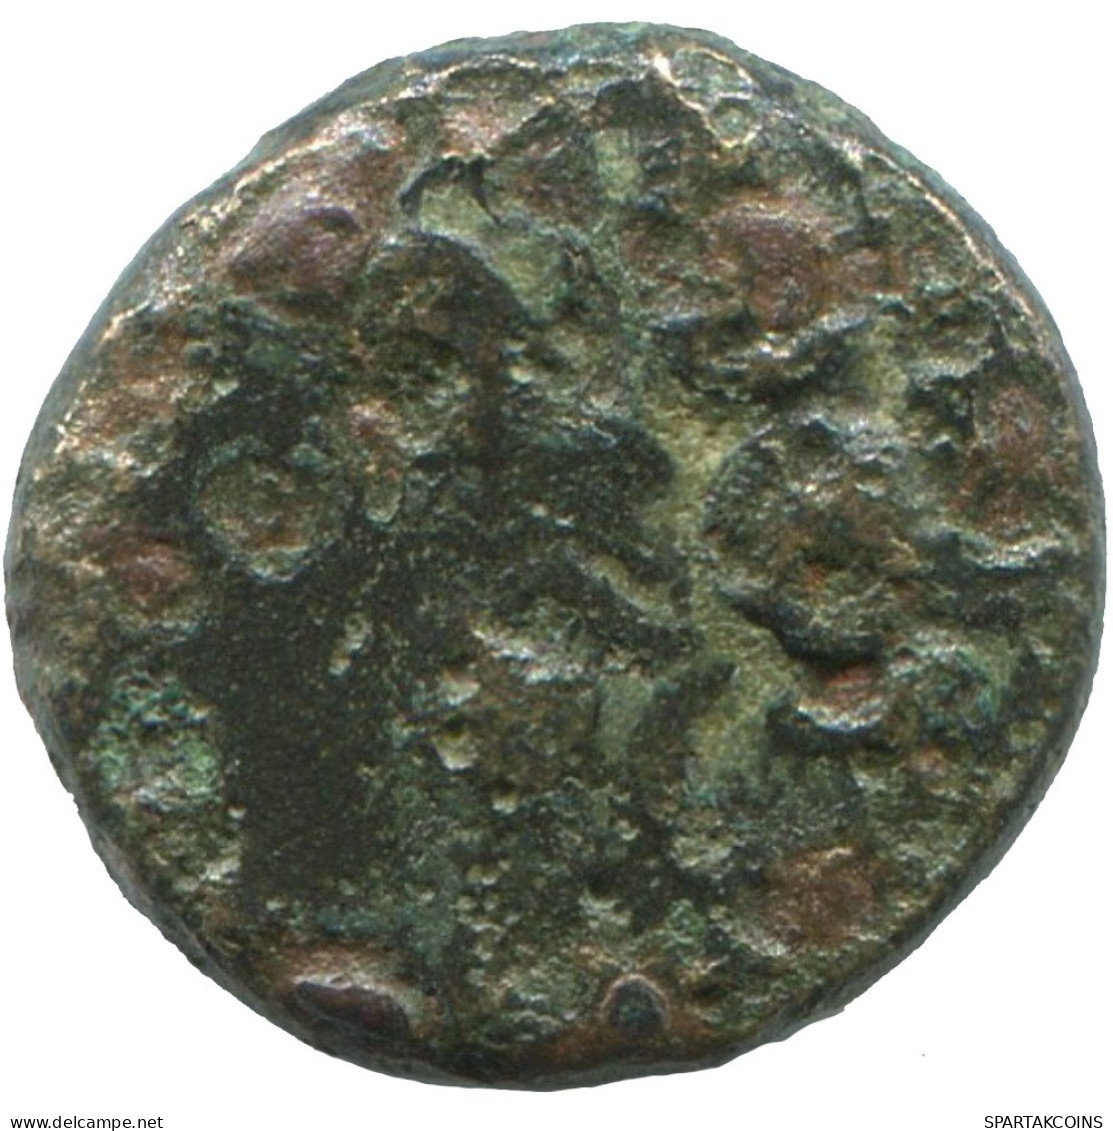 LION Antiguo GRIEGO ANTIGUO Moneda 1.7g/12mm #SAV1297.11.E.A - Greek